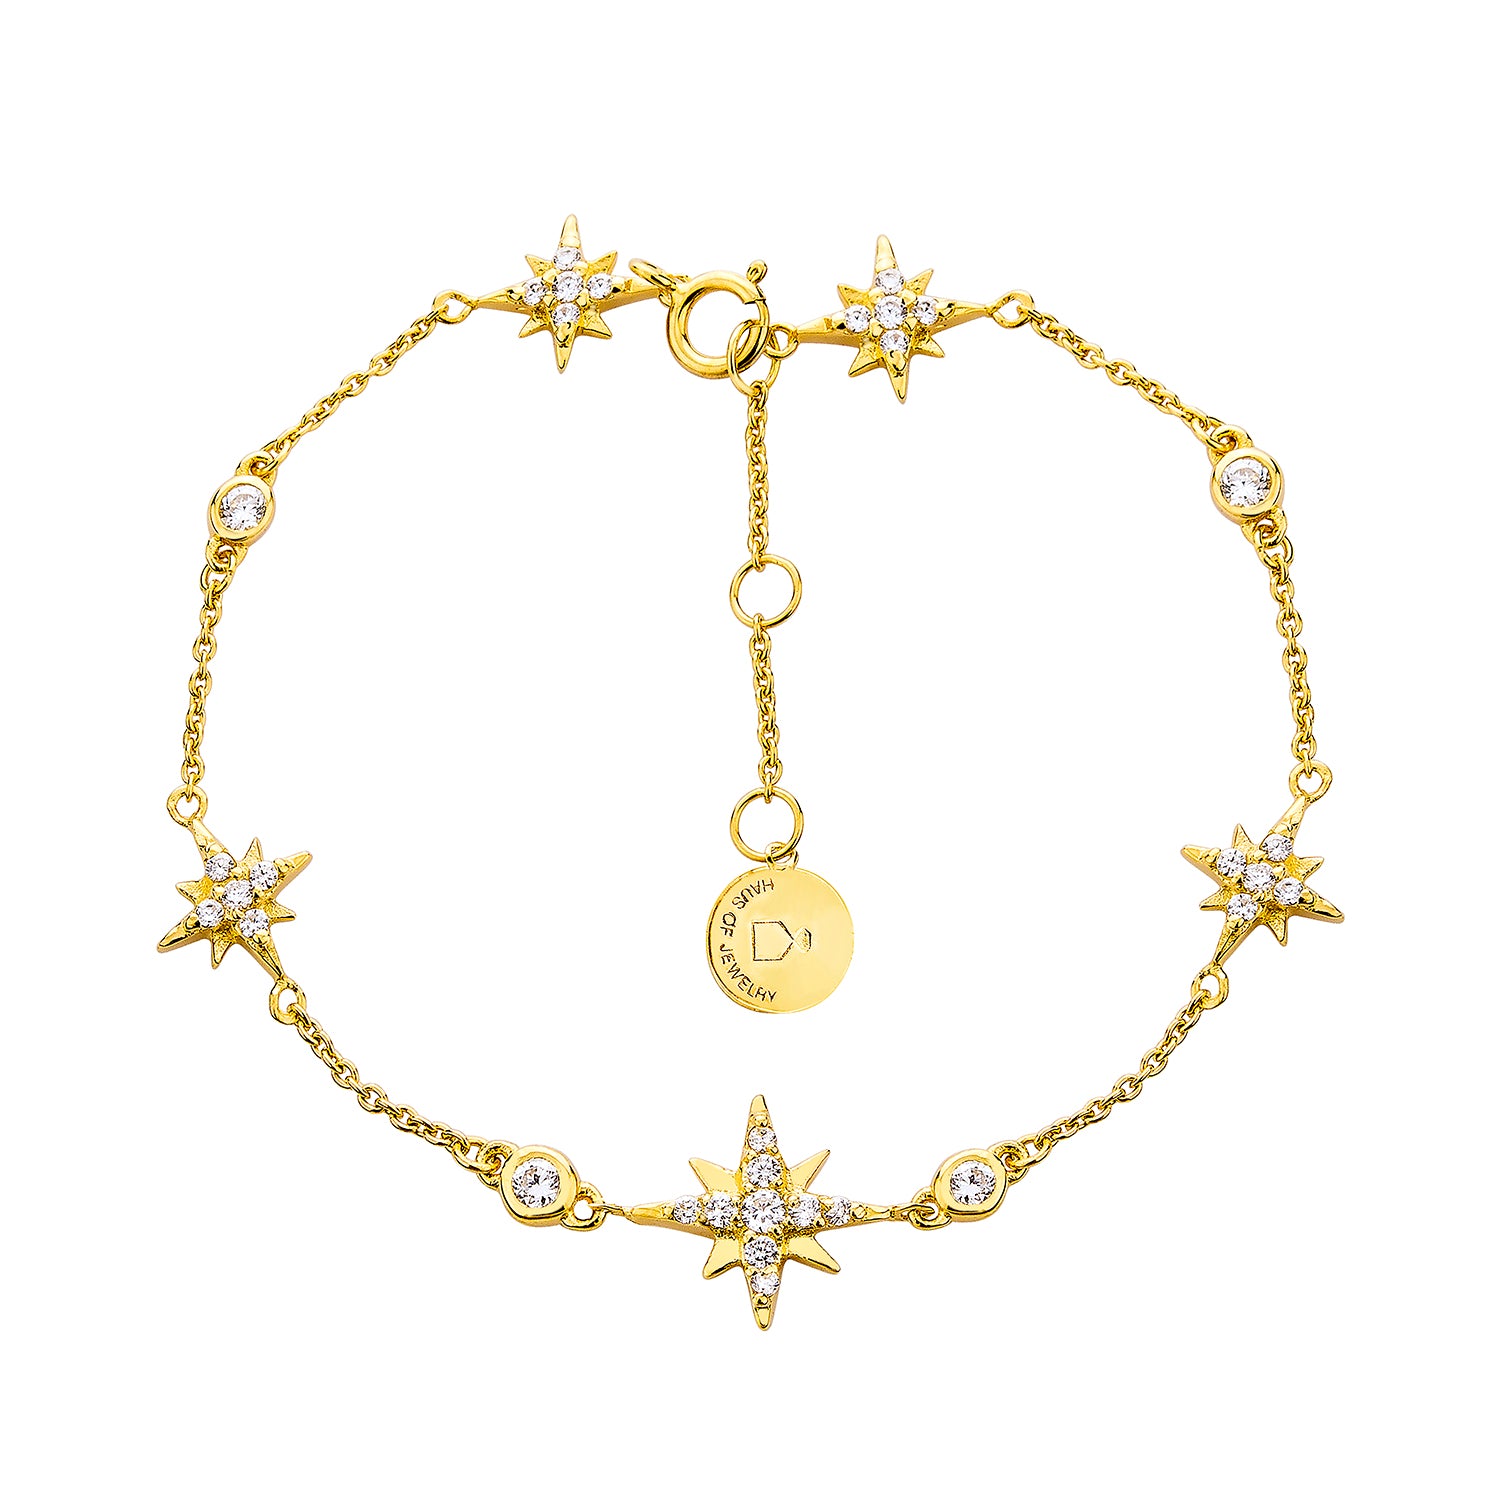 Celestial Chain Bracelet - Gold